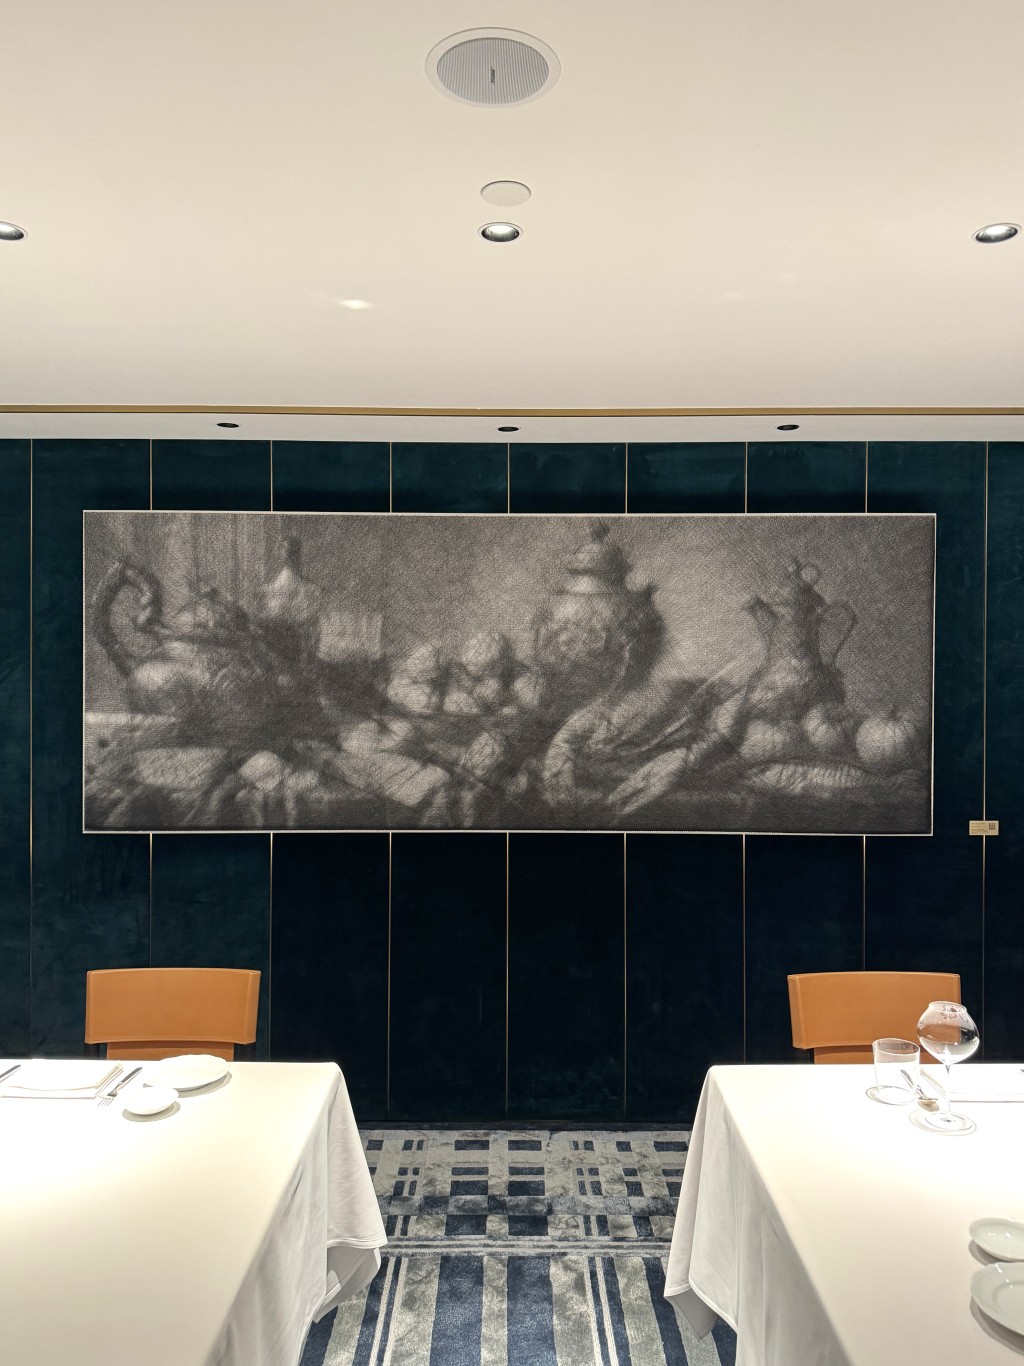 今年初为米芝莲三星意大利名厨Umberto Bombana创作的《盛宴》，是艺术家当下的最大型作品，Alfred亦直言最具挑战性。